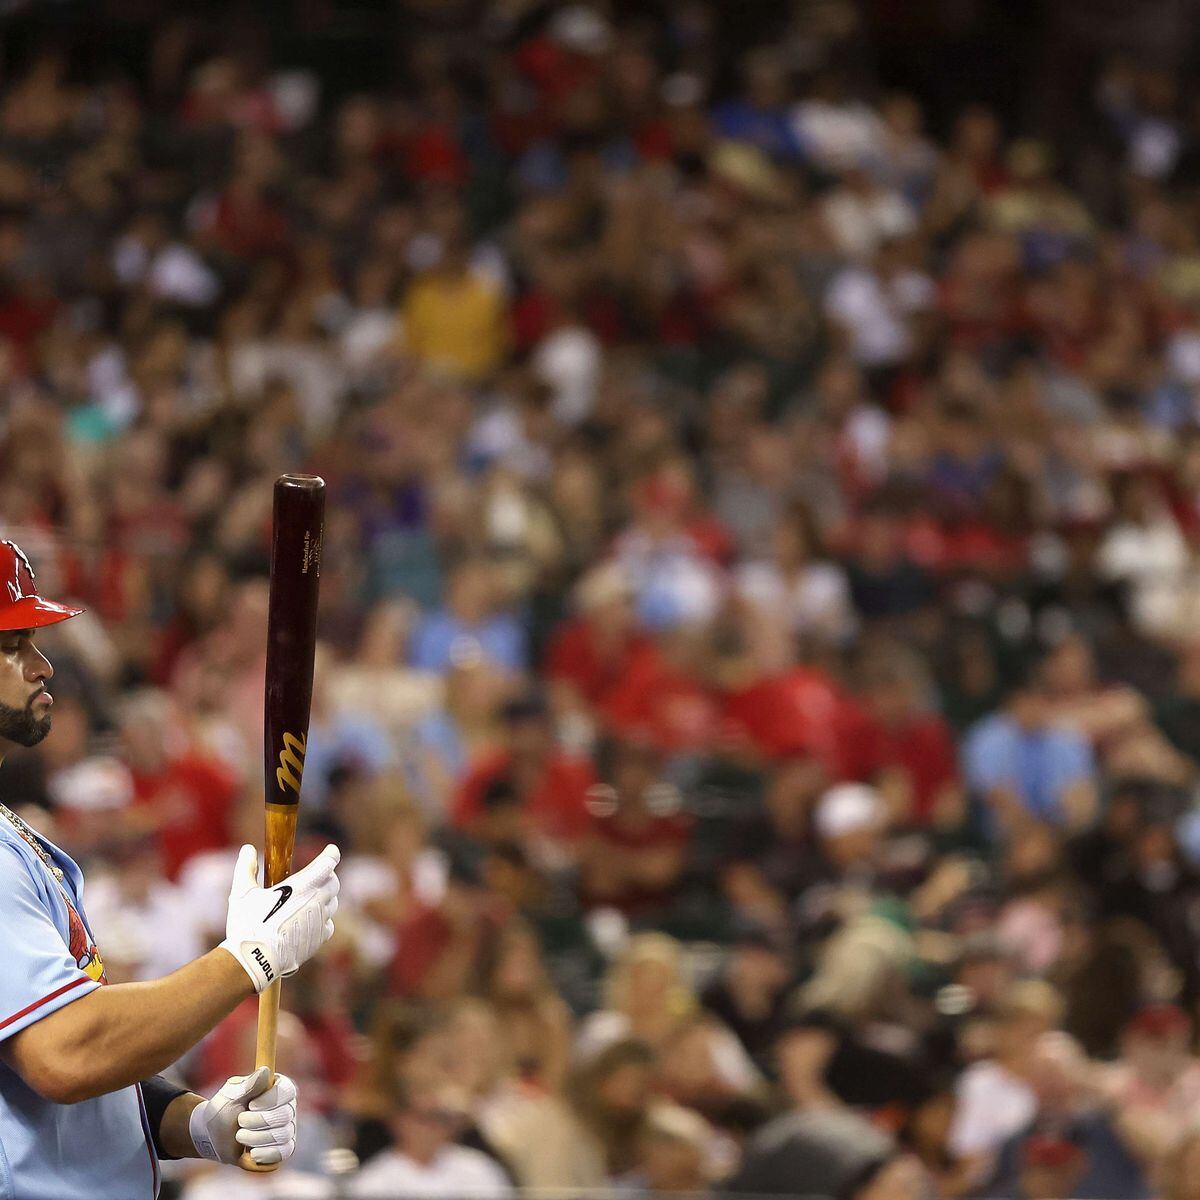 St. Louis Cardinals slugger Albert Pujols 'chases' baseball history: 700  home runs